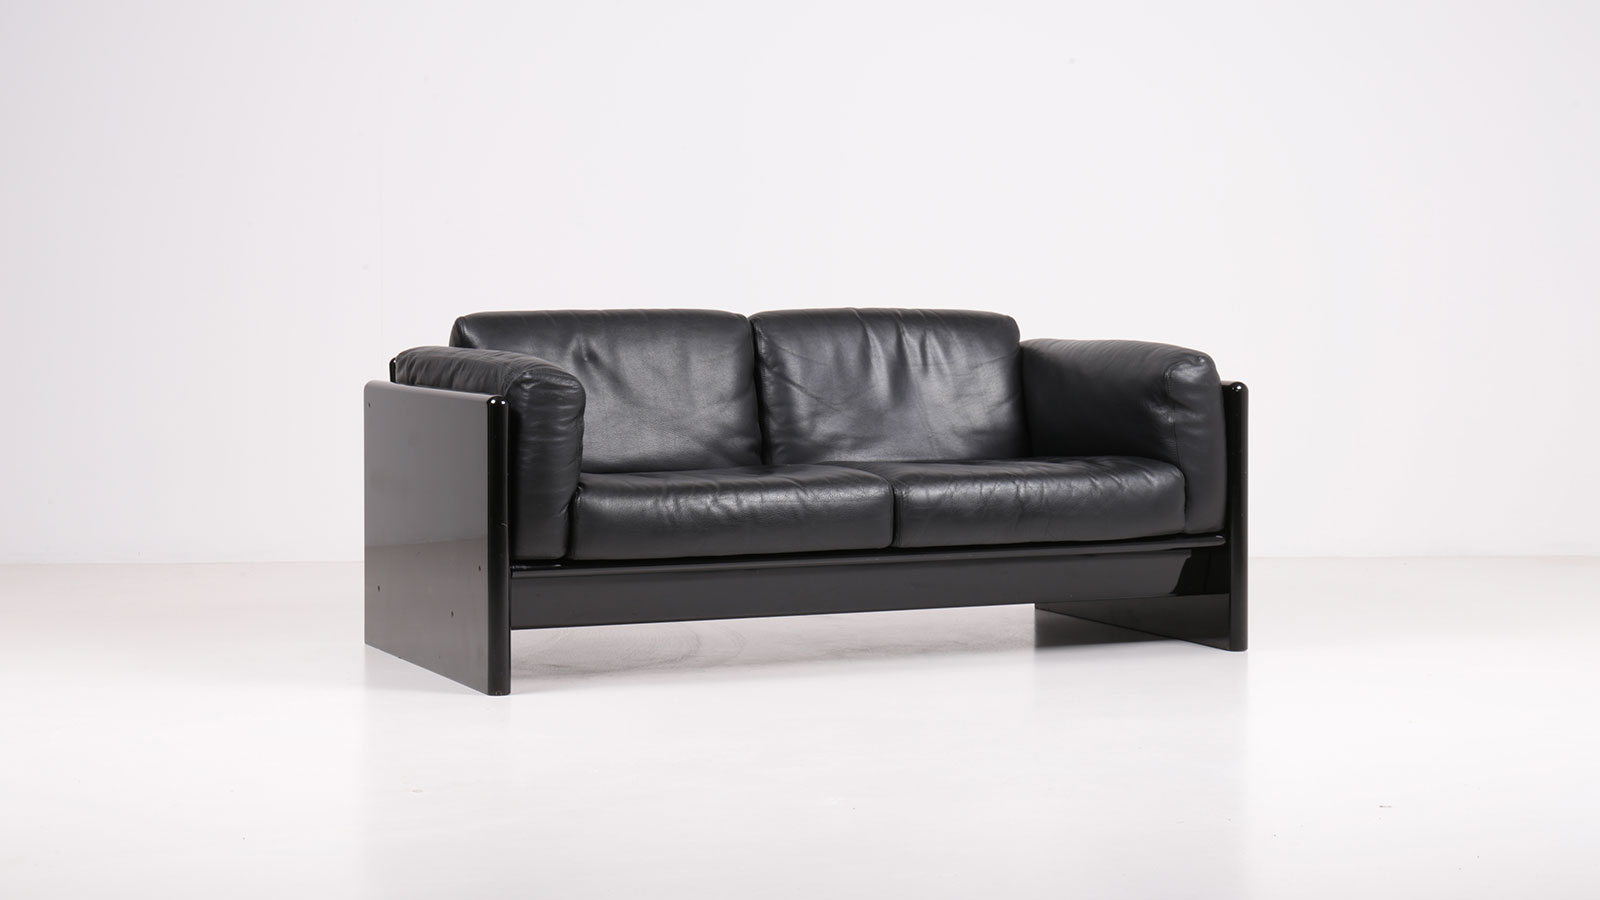 Arnolfo sofa by Ufficio Progetti Gavina | Paradisoterrestre